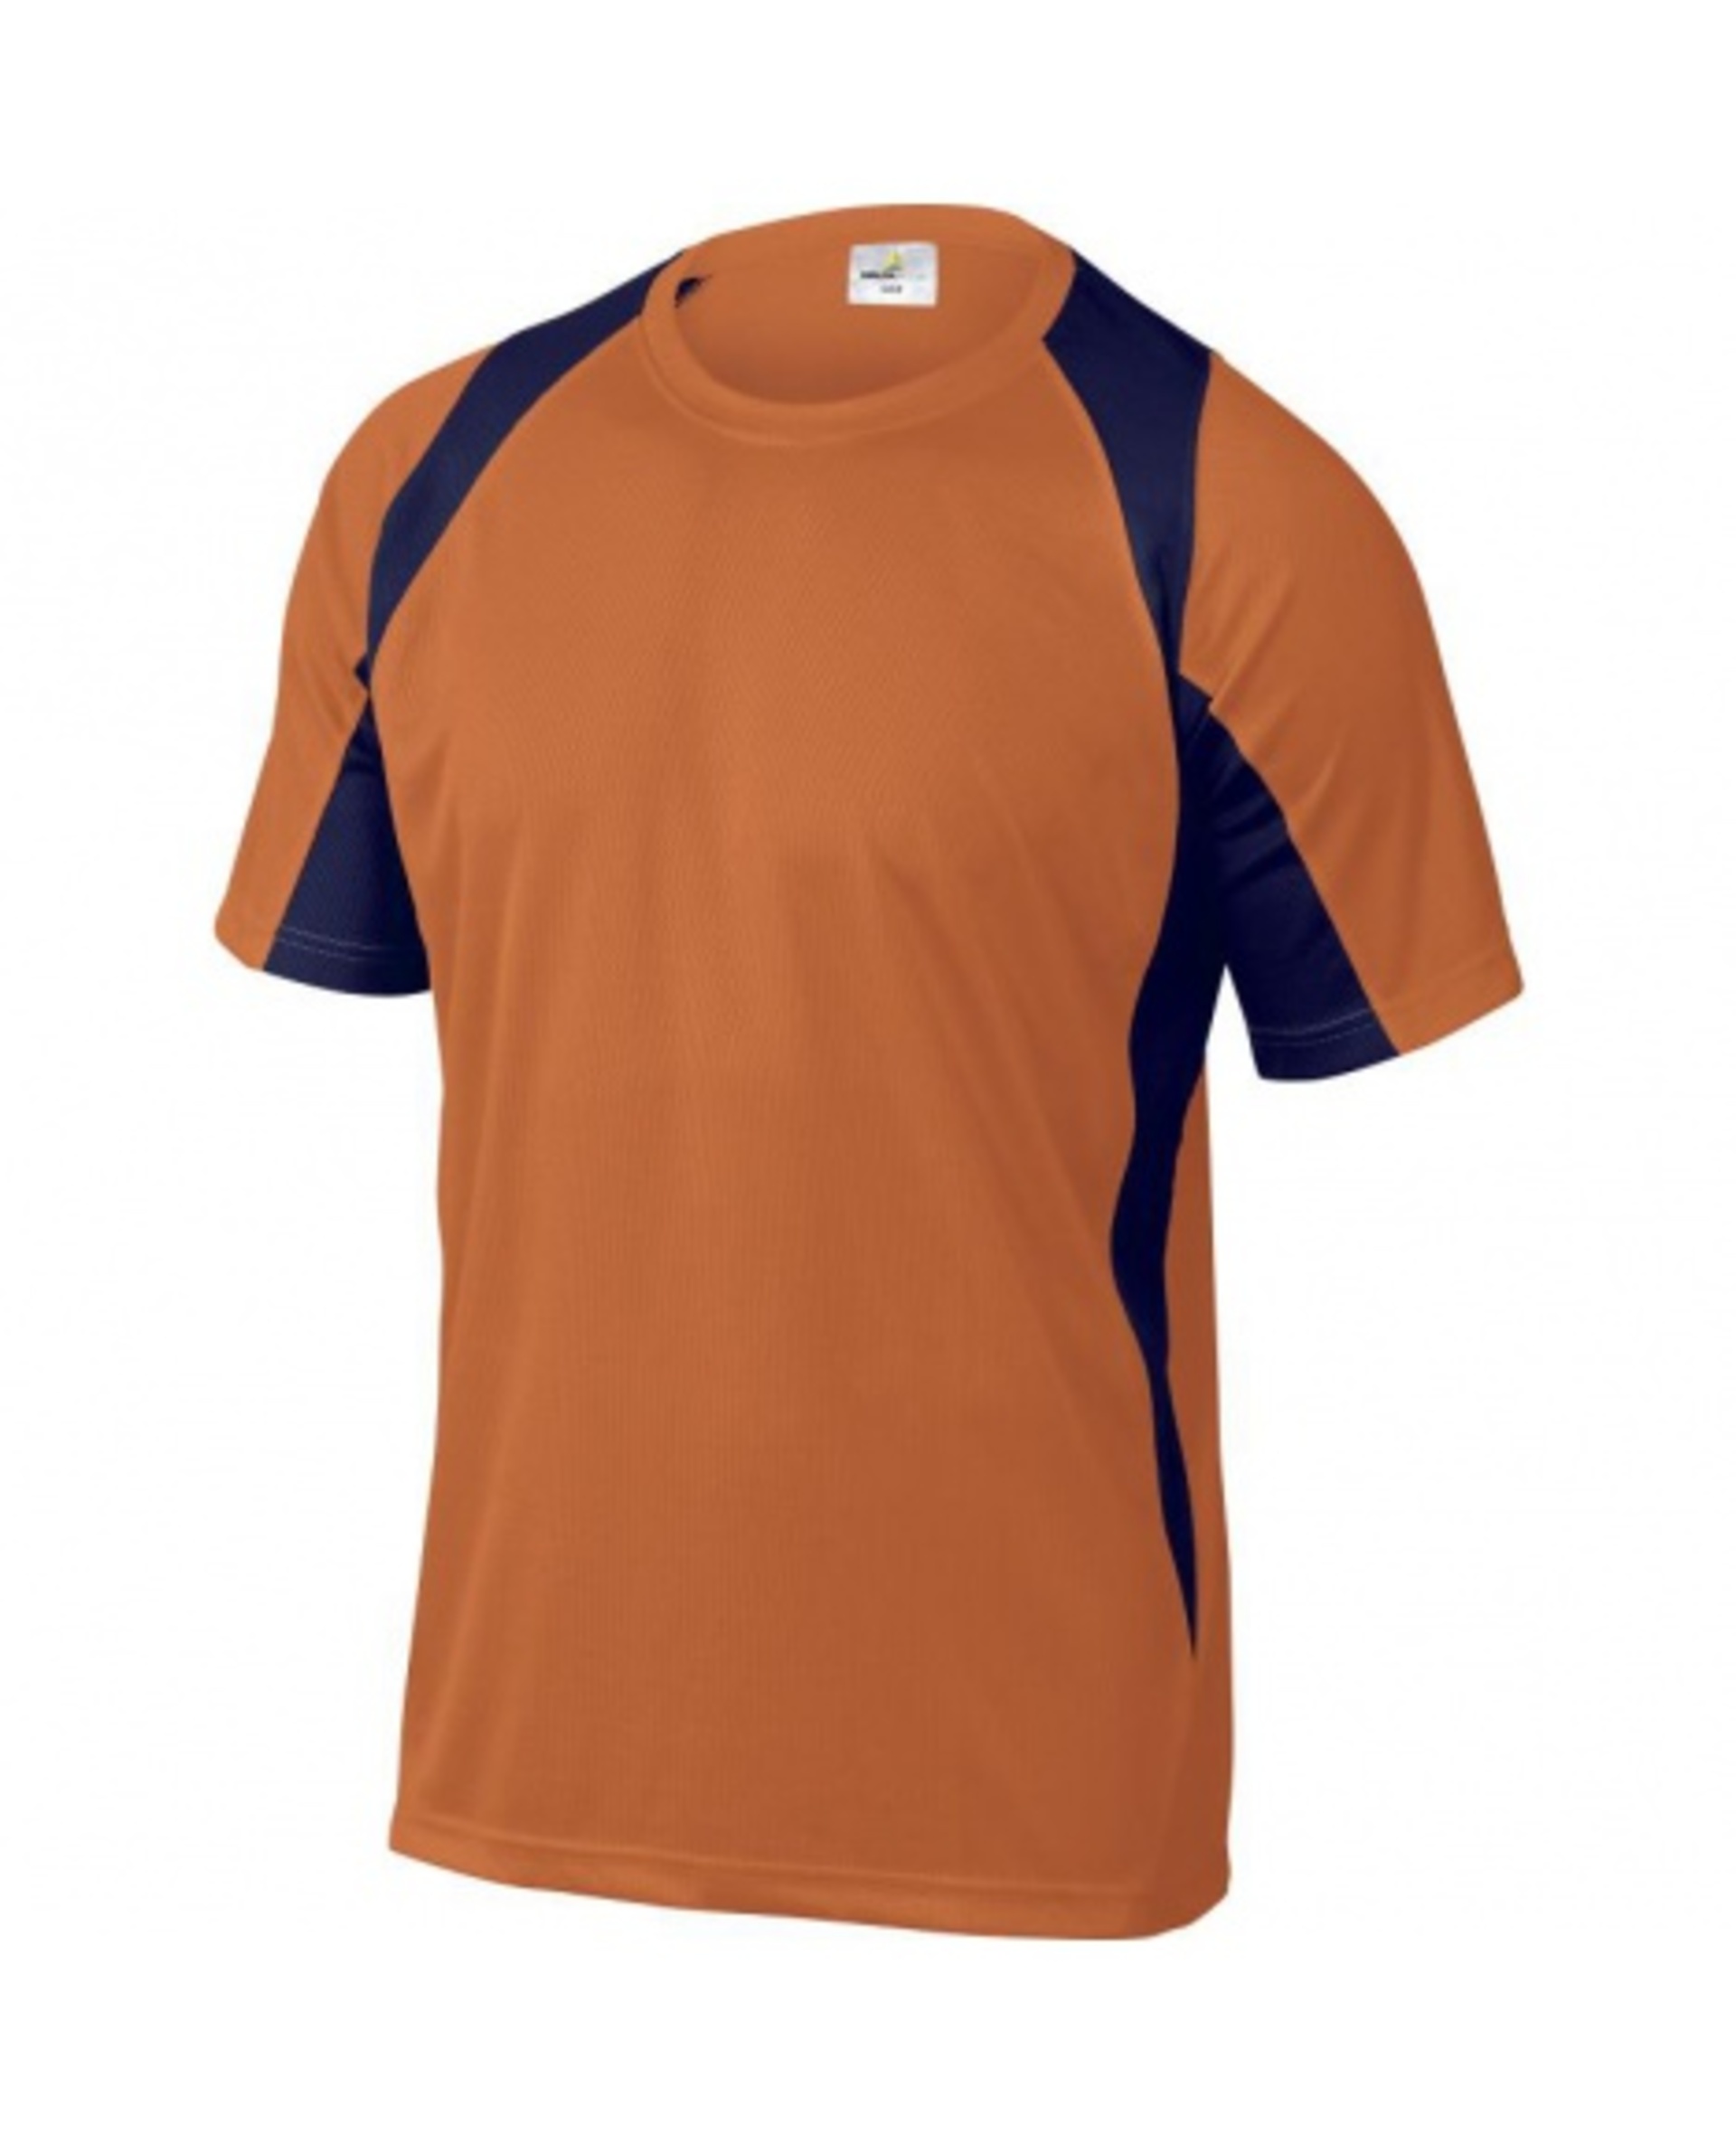 DeltaPlus BALI pánské Tričko oranžová/modrá L